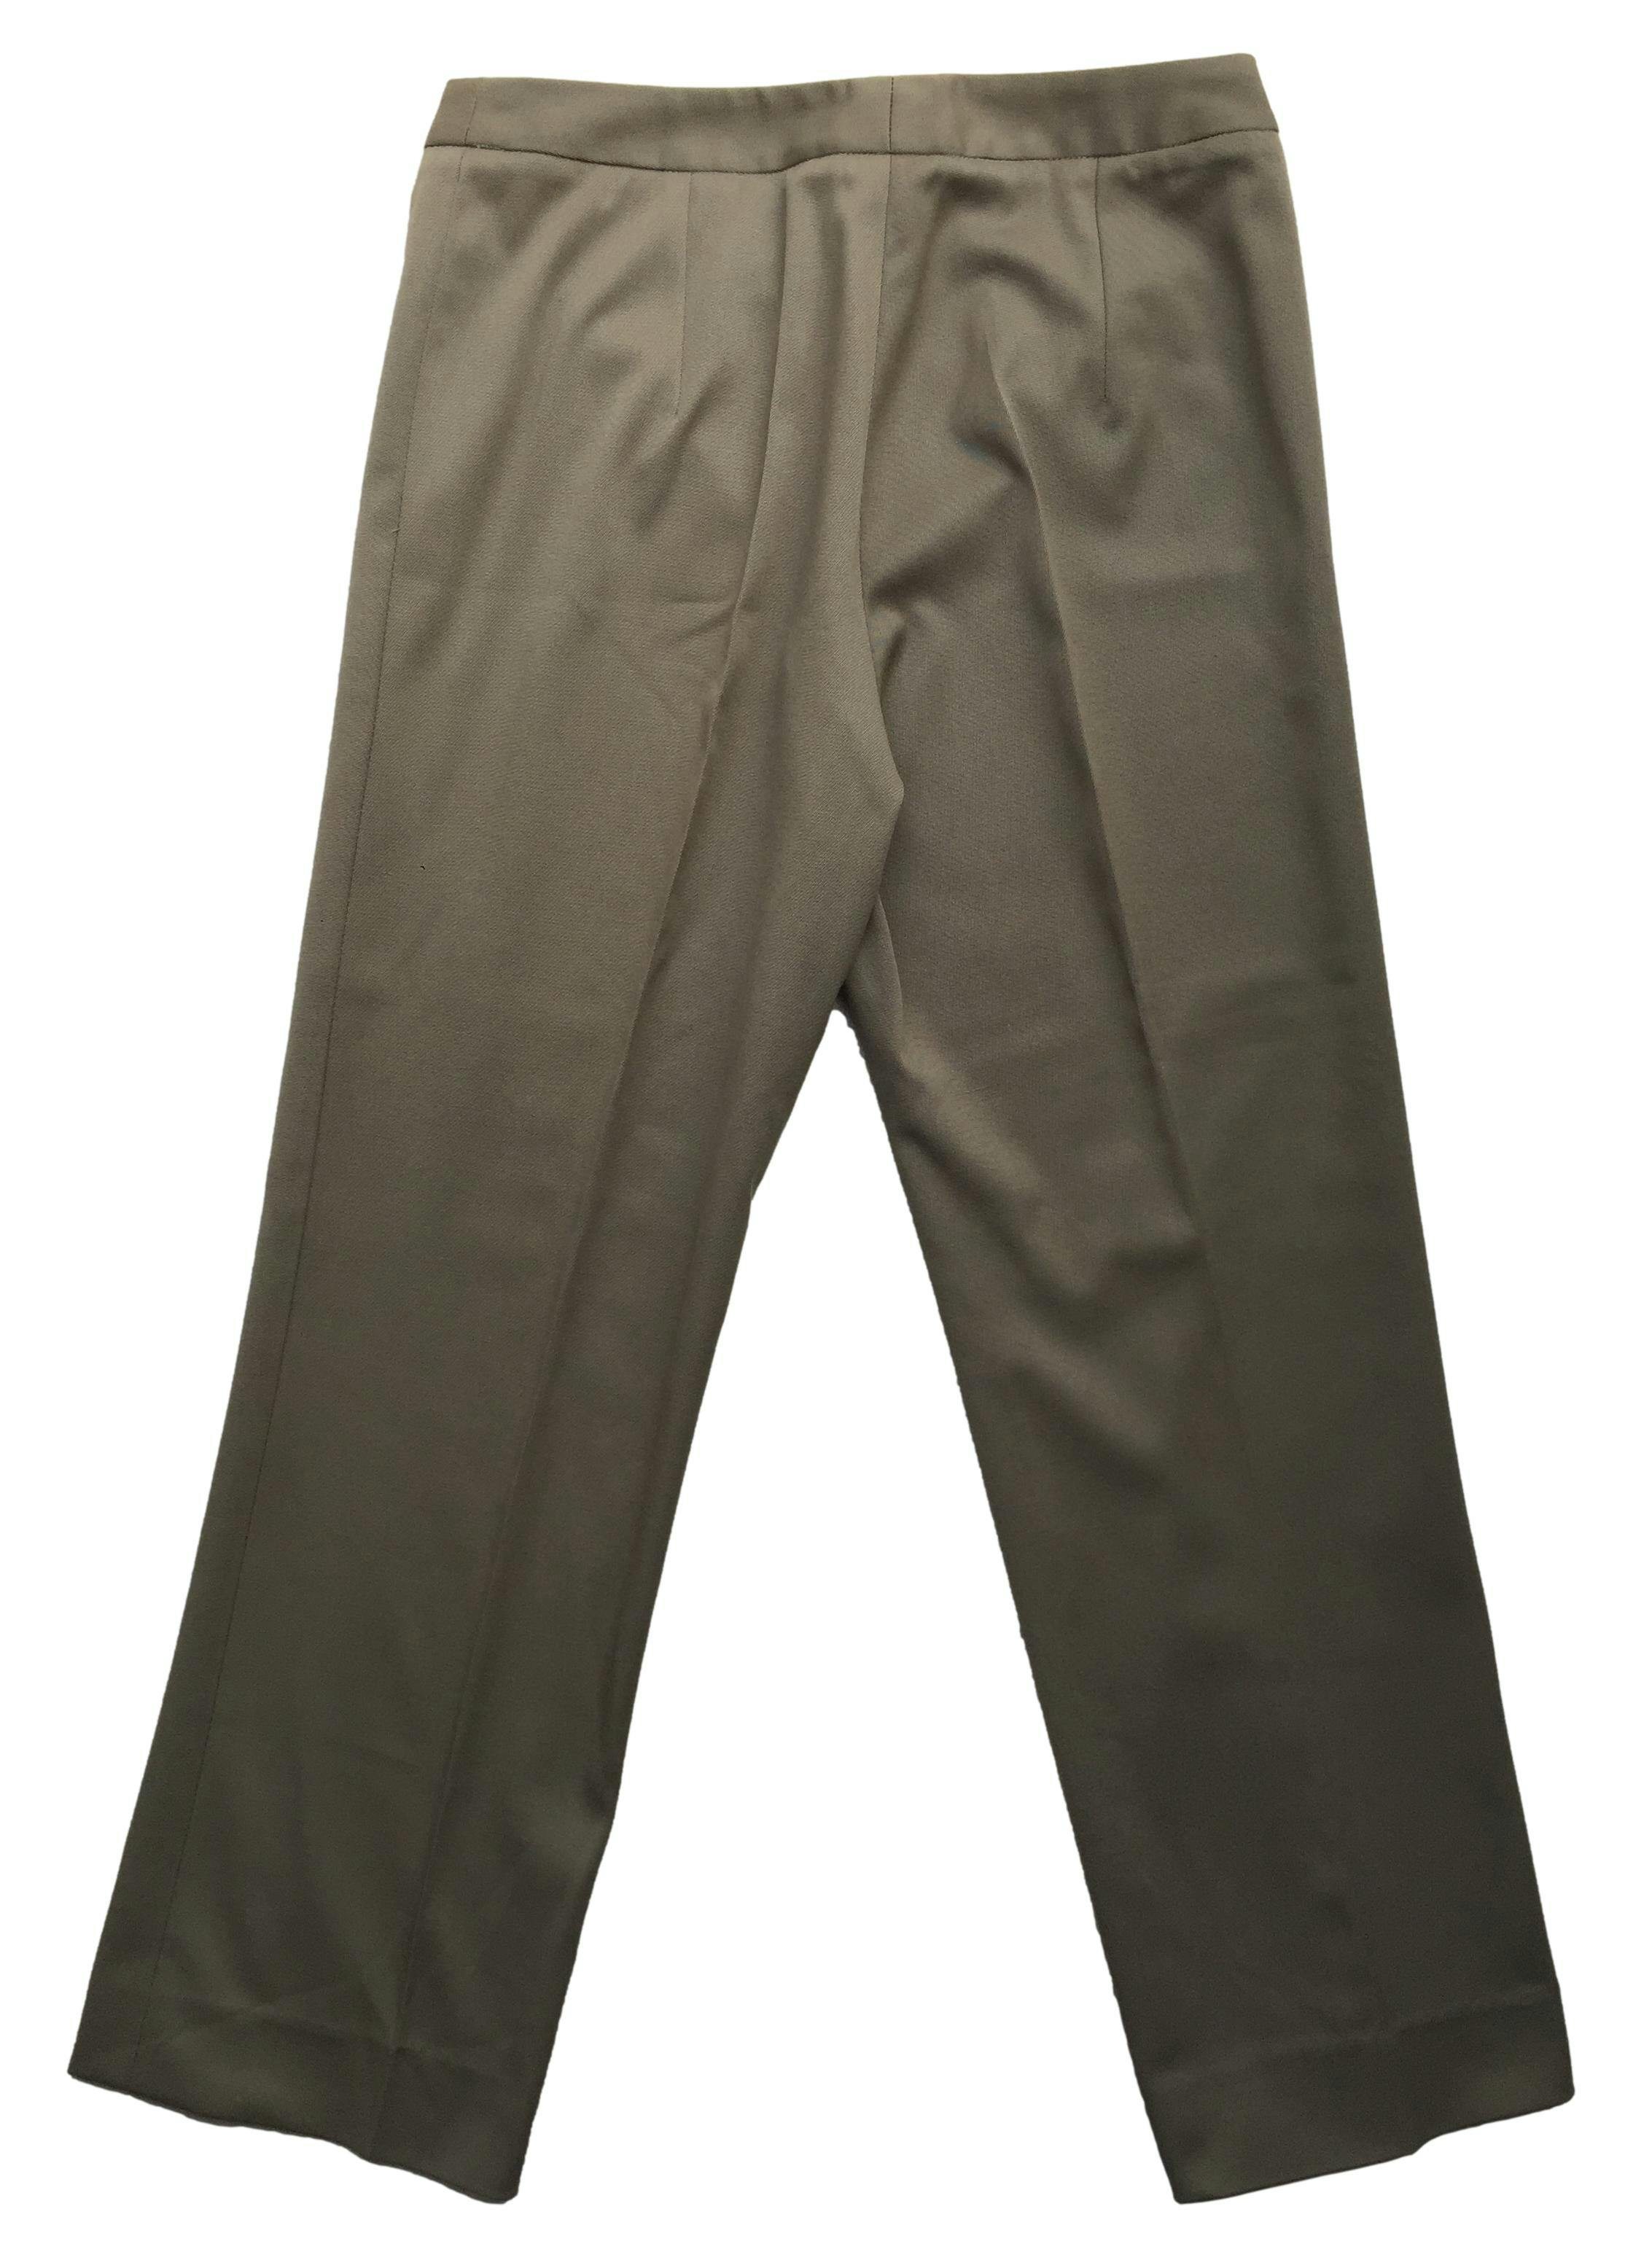 Pantalón sastre color camel con pierna recta y botón frontal. Cintura 78cm, Largo 92cm.